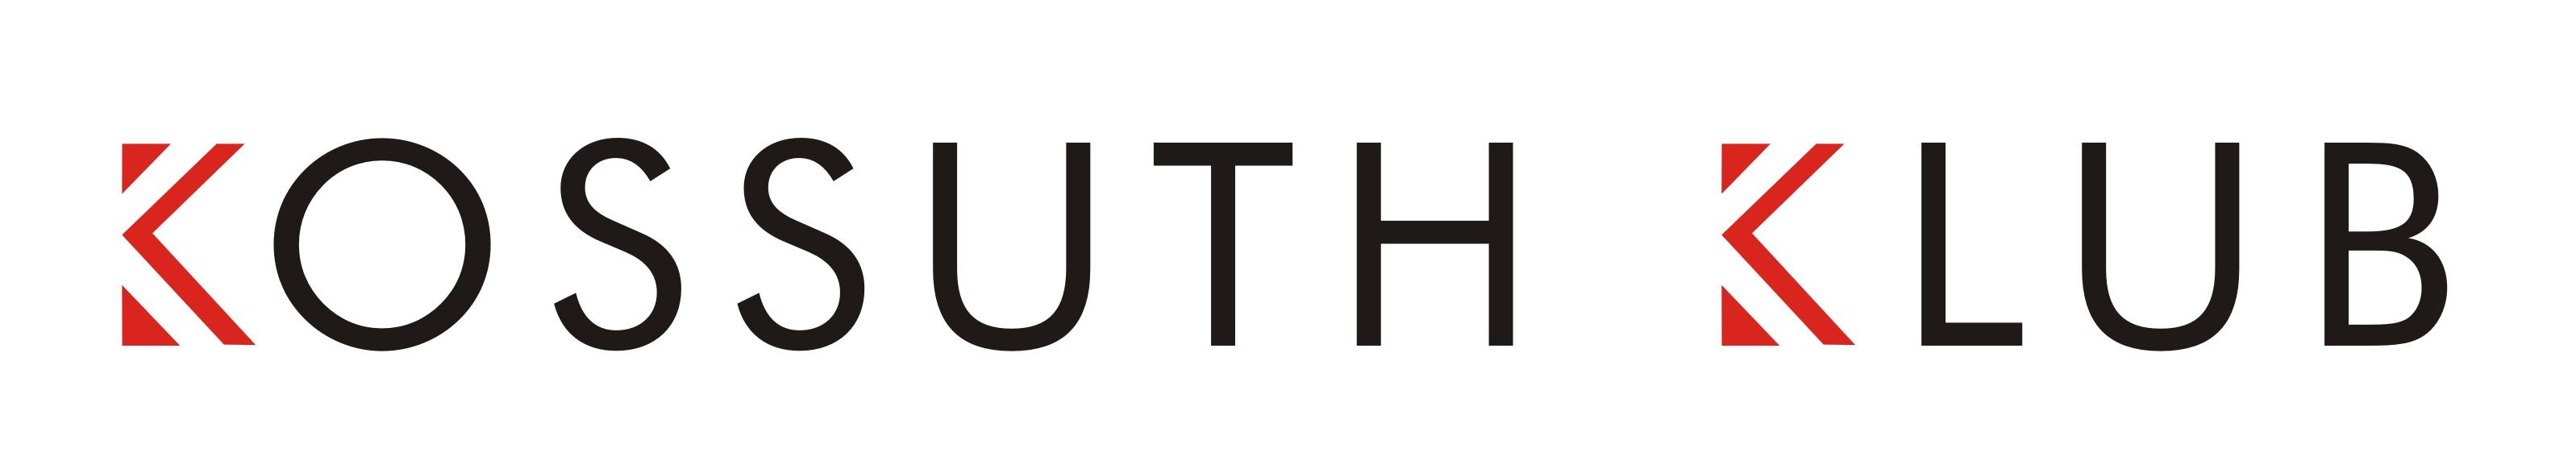 kossuth klub logo jpg